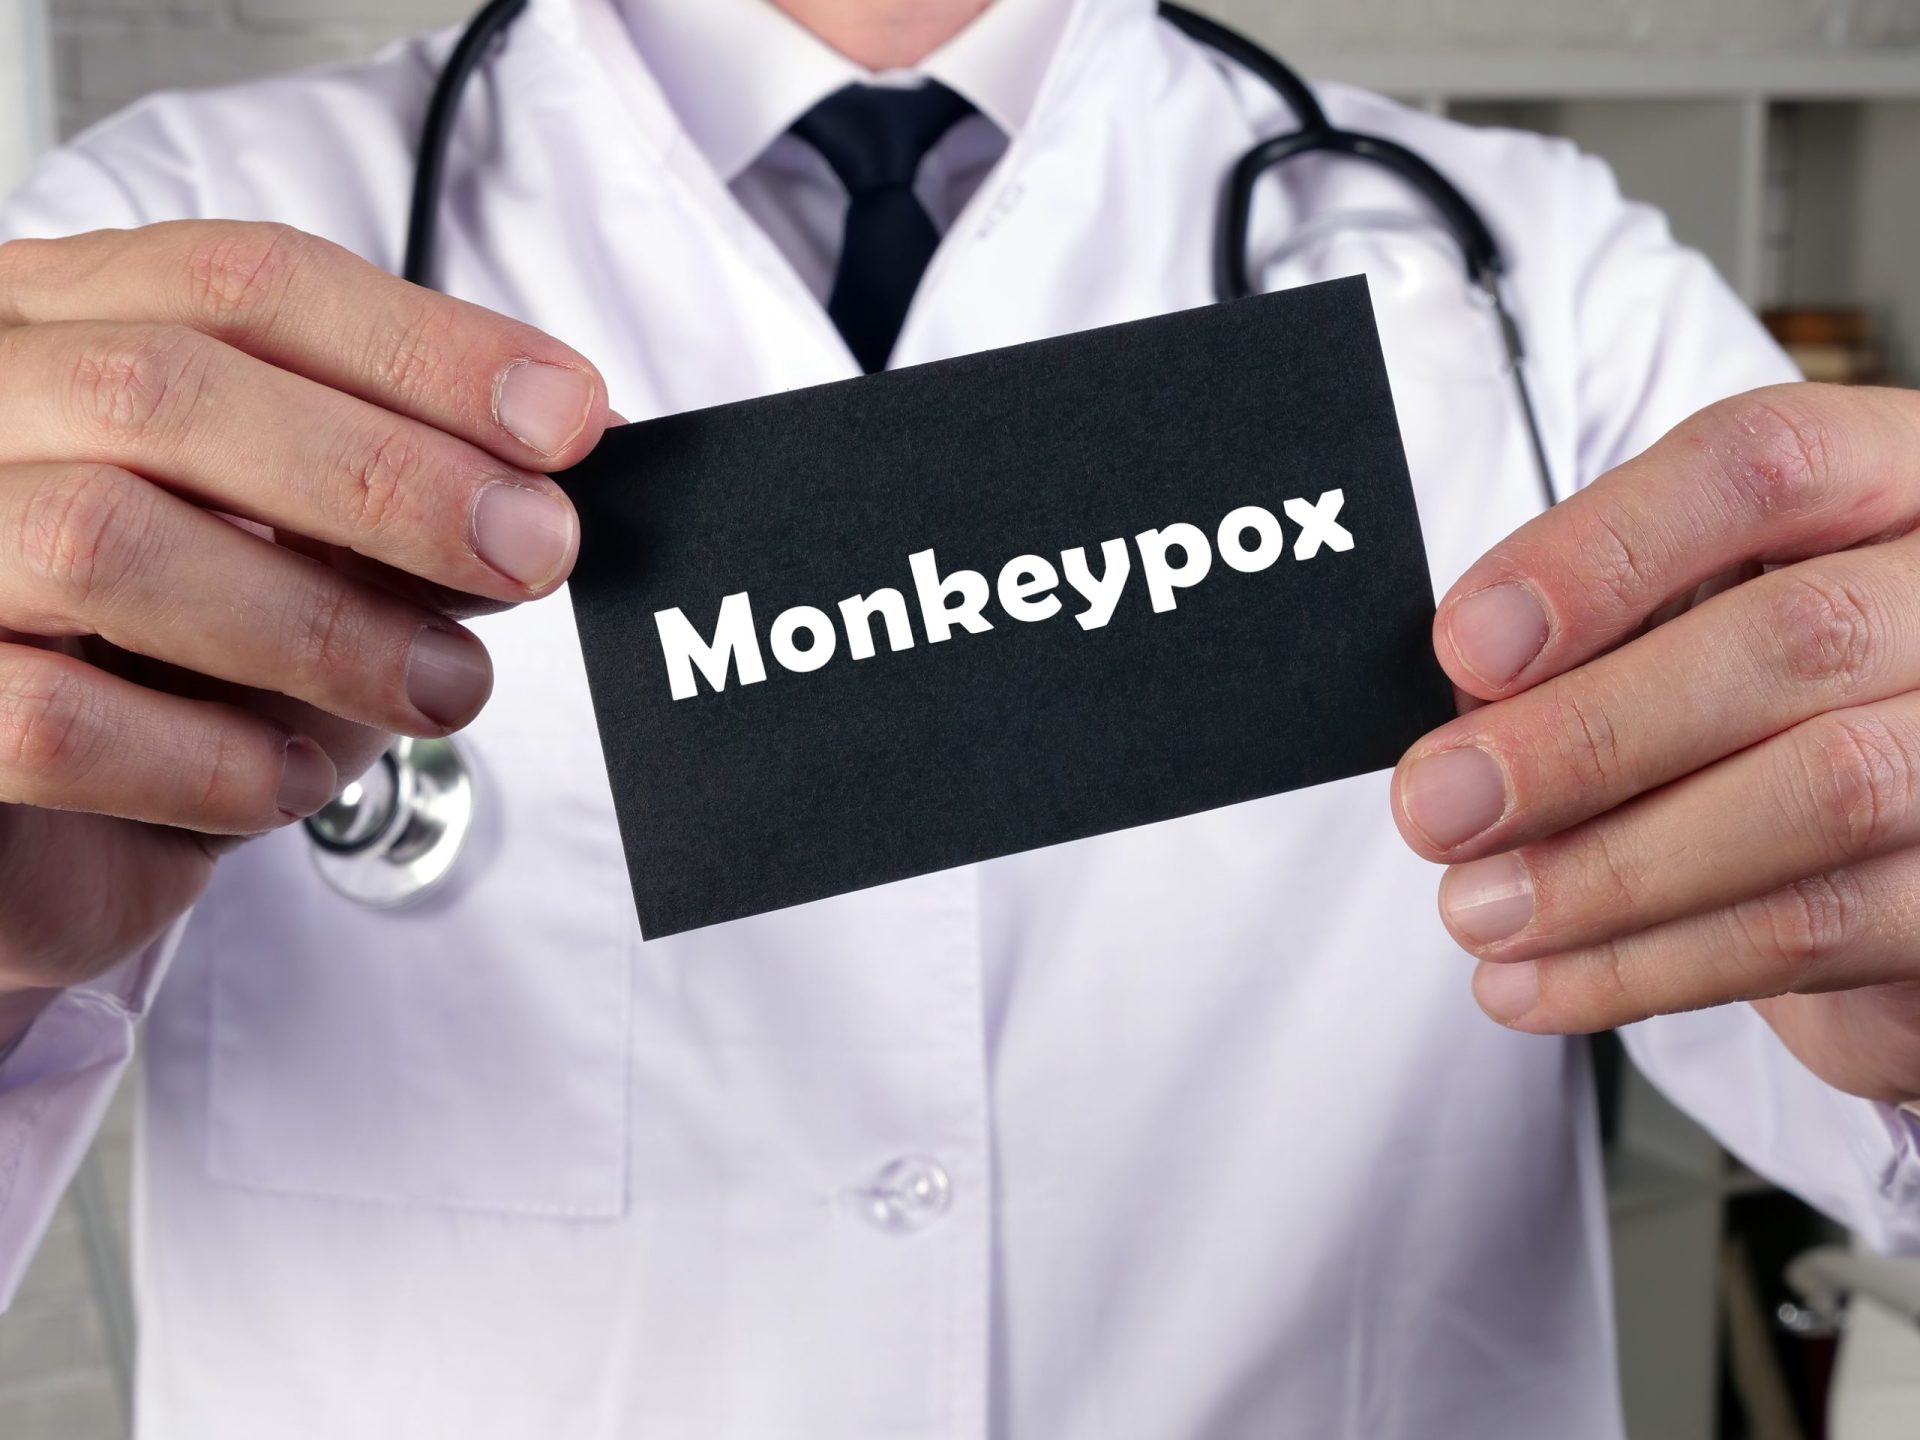 Confirmadas mais 19 infeções de monkeypox em Portugal